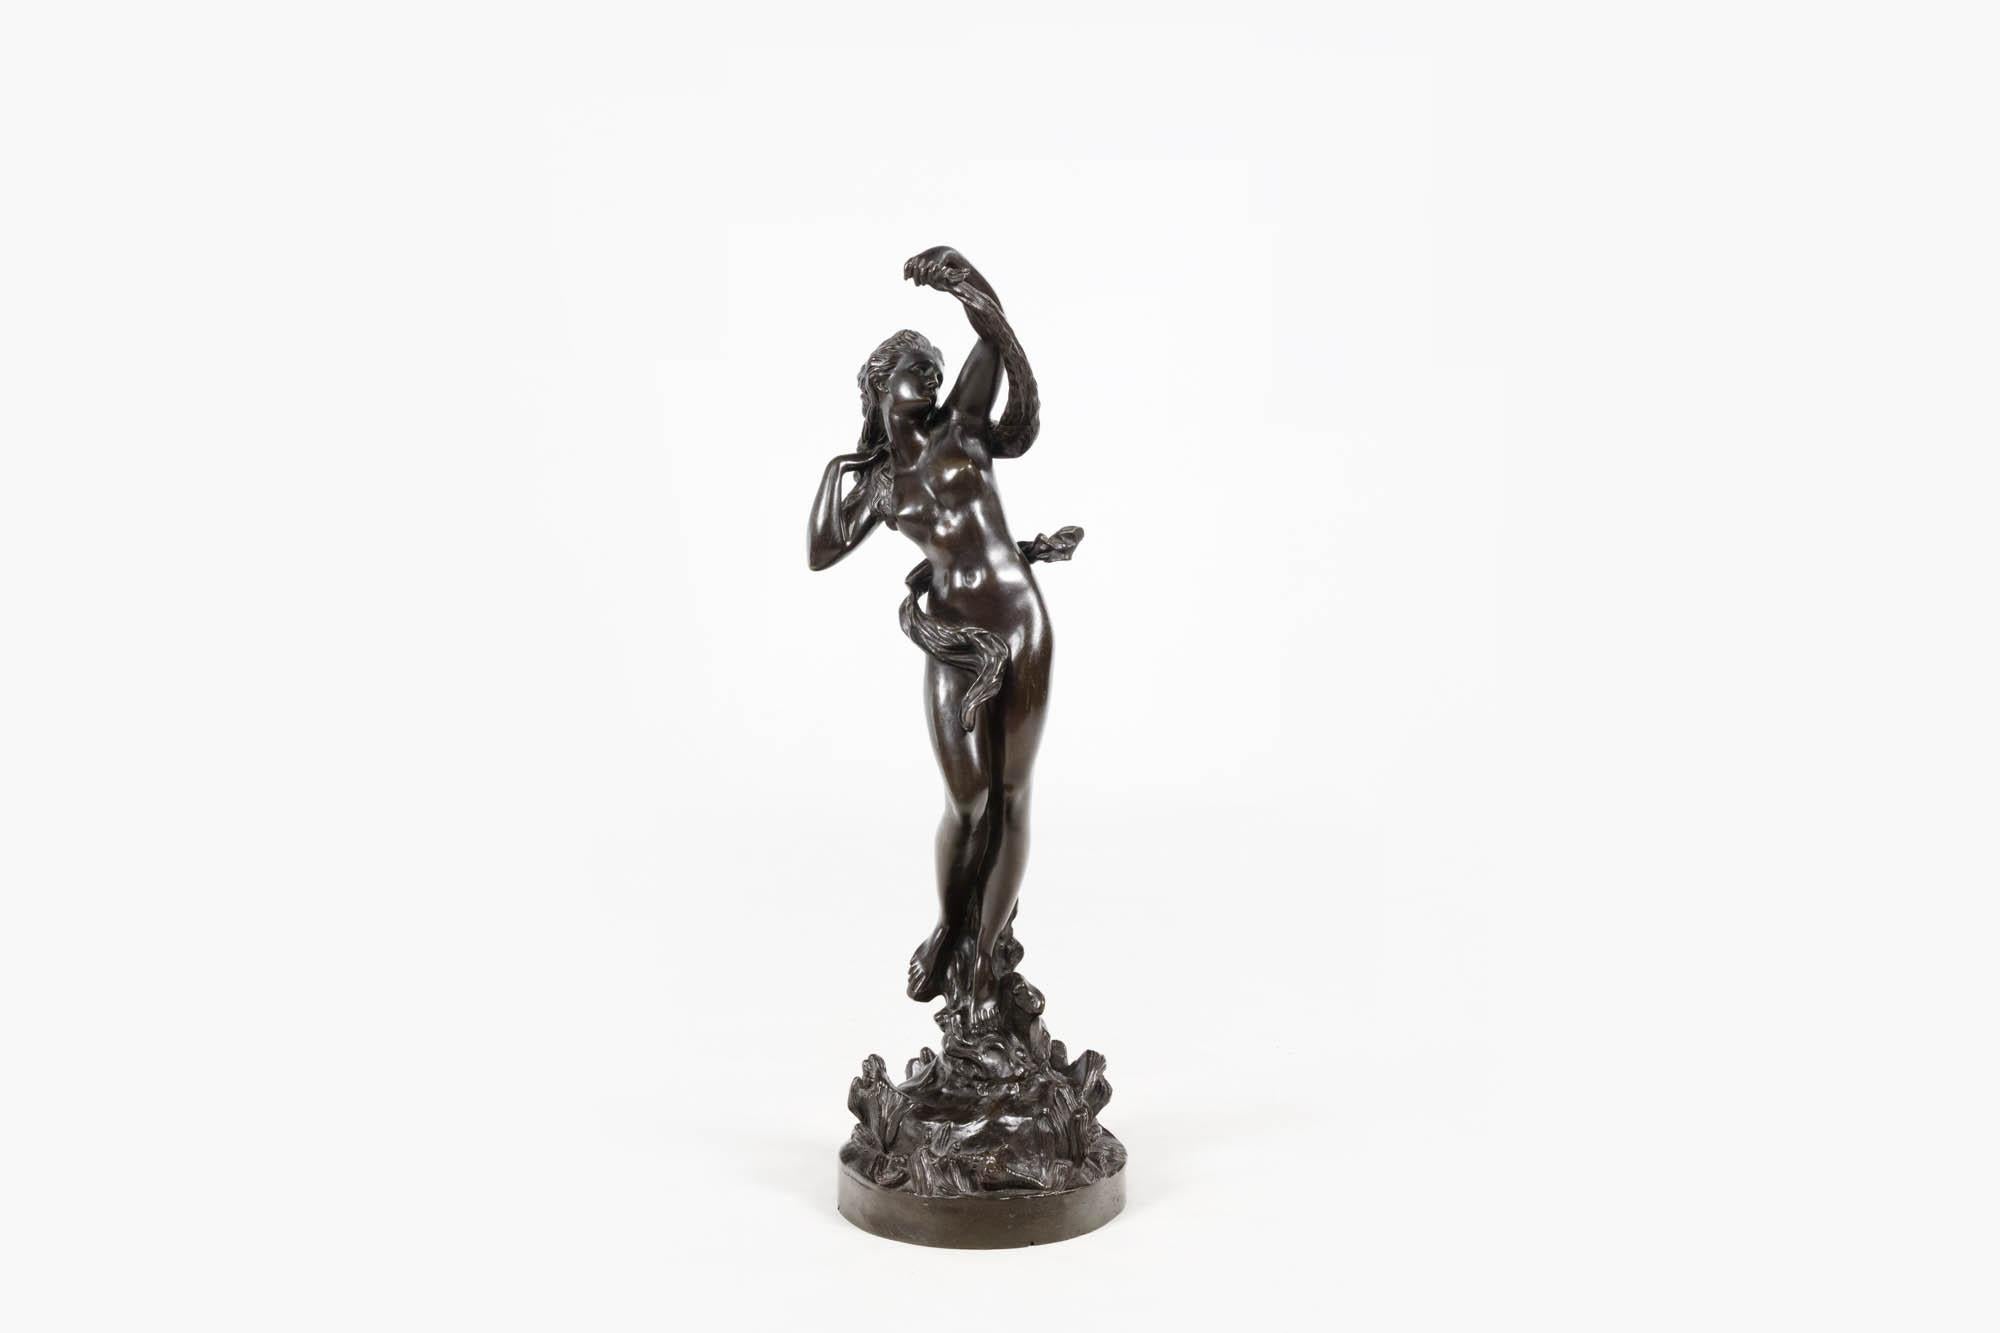 Patinierte Bronzeskulptur aus dem 19. Jahrhundert, die eine tanzende weibliche Figur darstellt, möglicherweise eine Meeresnymphe. Die Figur steht auf einem Sockel aus Muscheln und wirbelt ein Tuch um ihren Körper. Es fängt die Bewegung und Zartheit